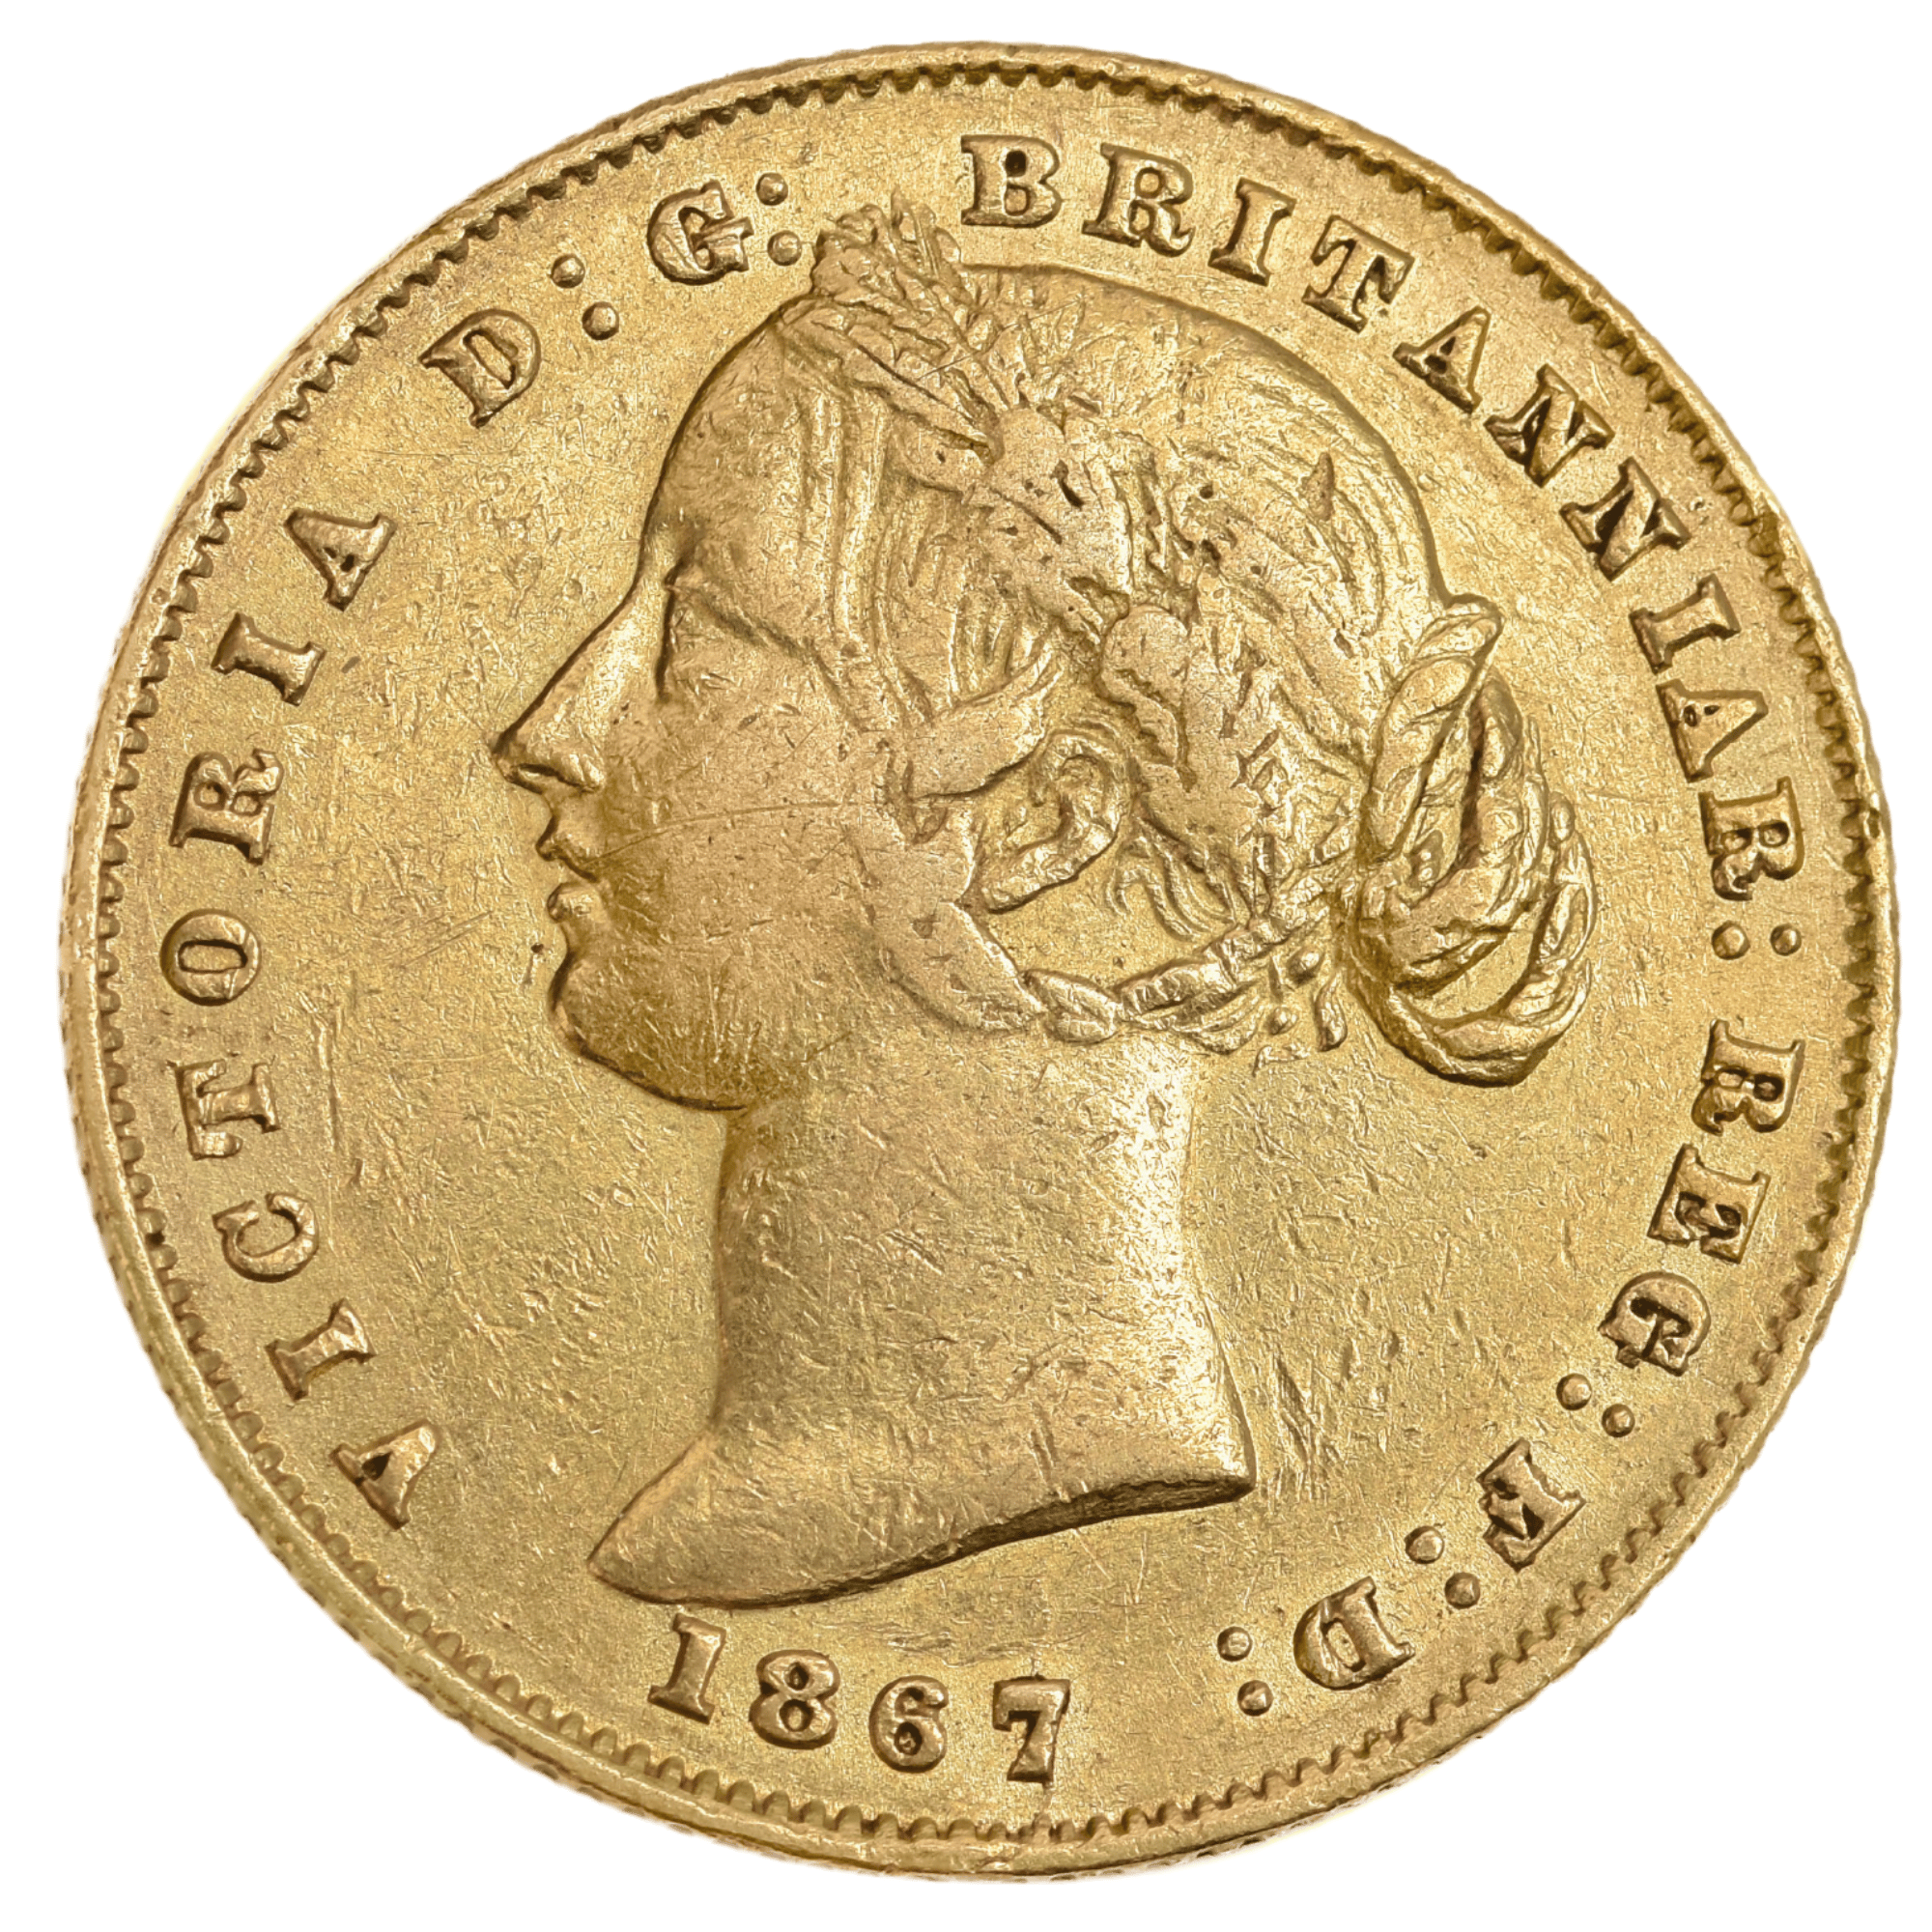 1867 Sydney Mint Sovereign Good Fine